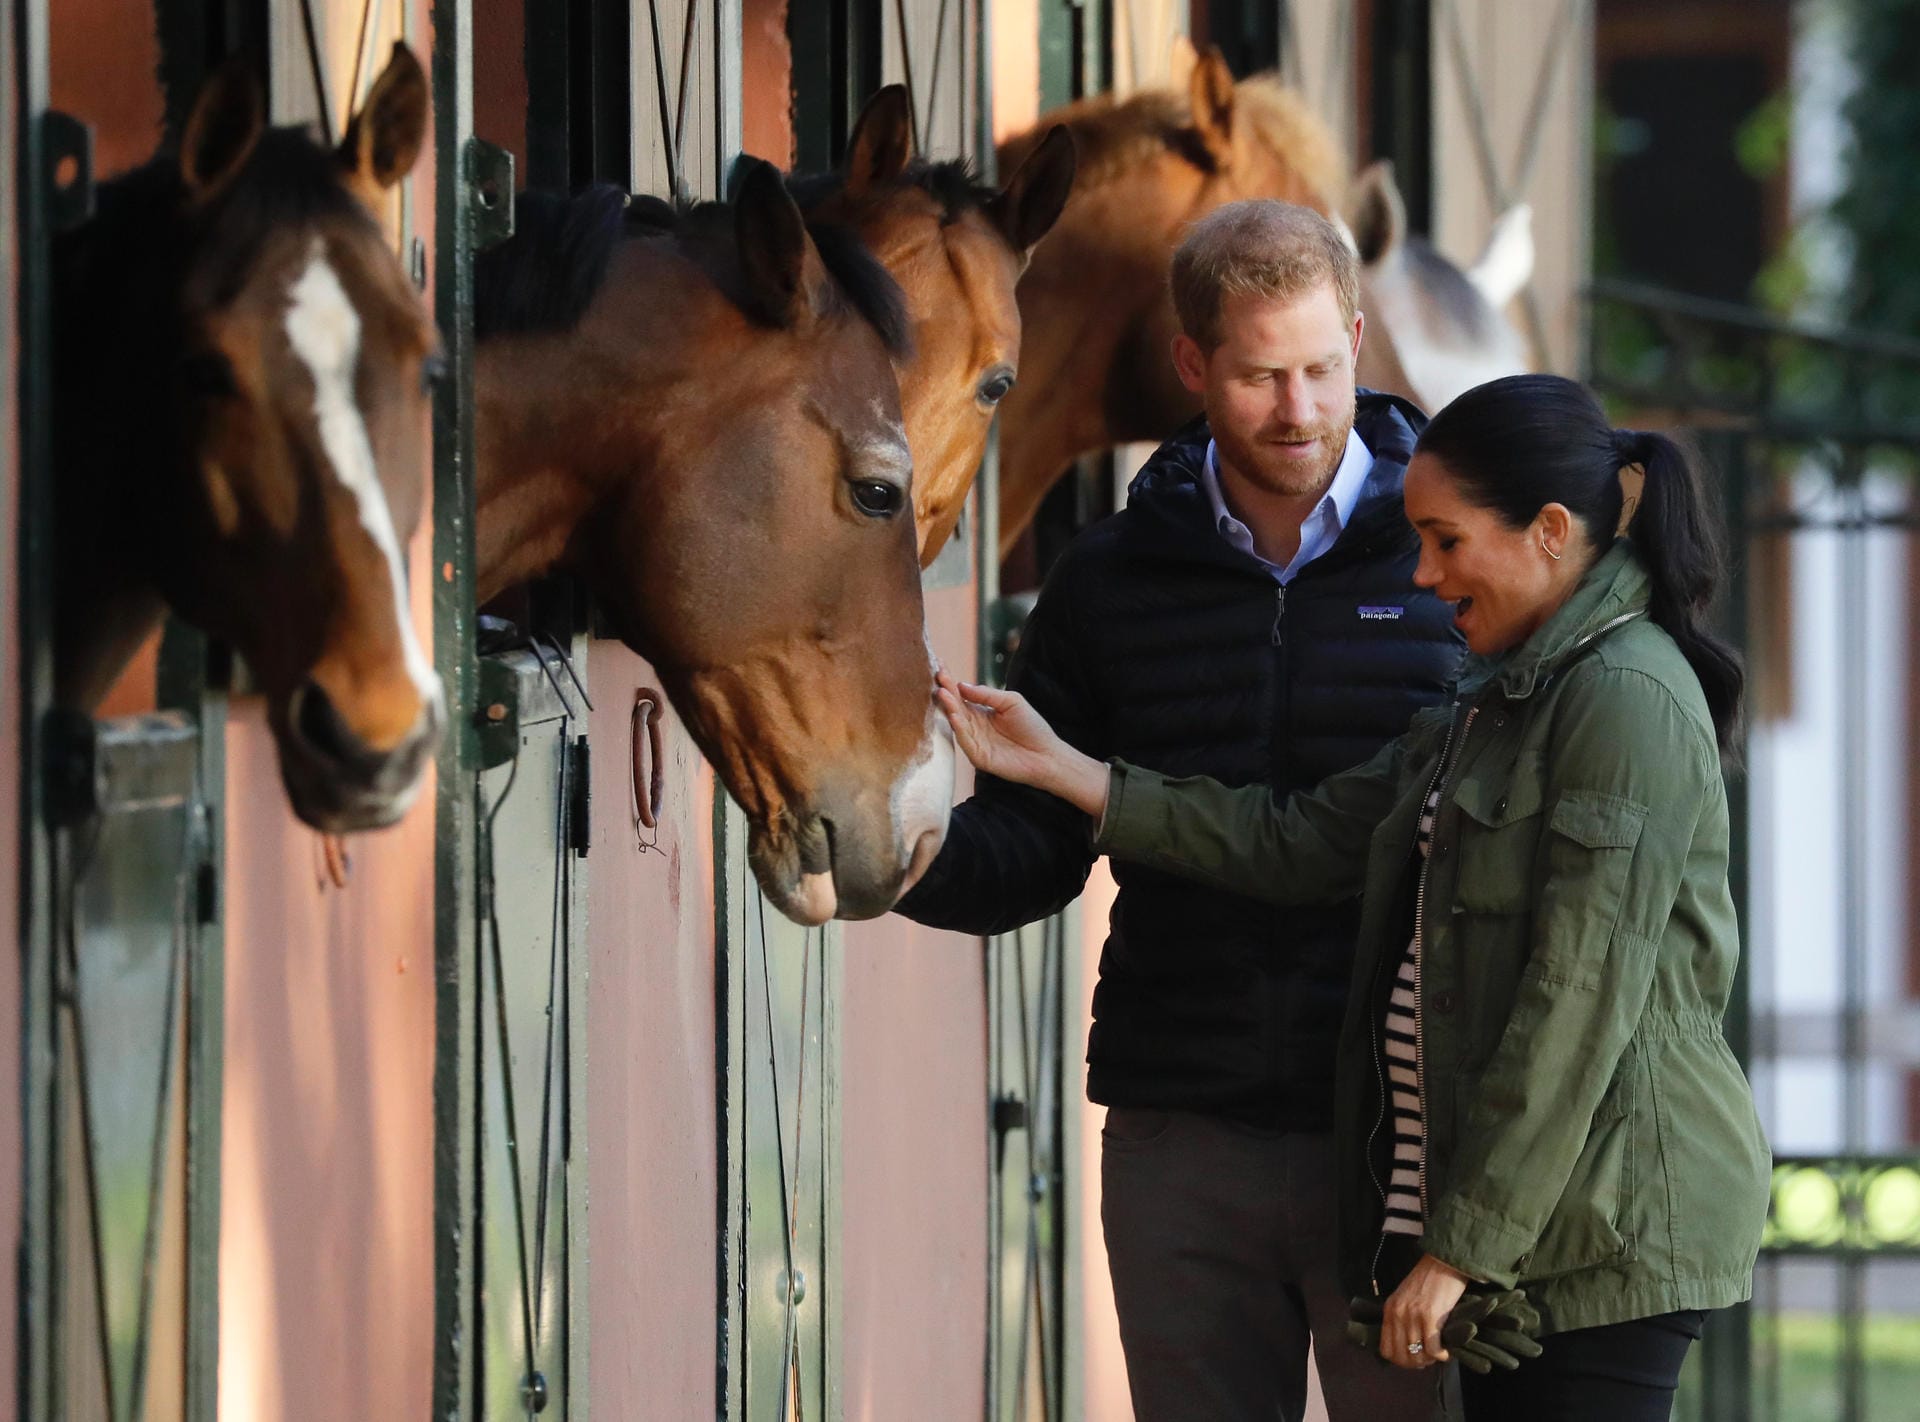 Tag drei der royalen Marokkoreise: Harry und Meghan besuchen die Moroccan Royal Federation of Equestrian Sports. Der erste Termine ihres letzten Tages in Rabat